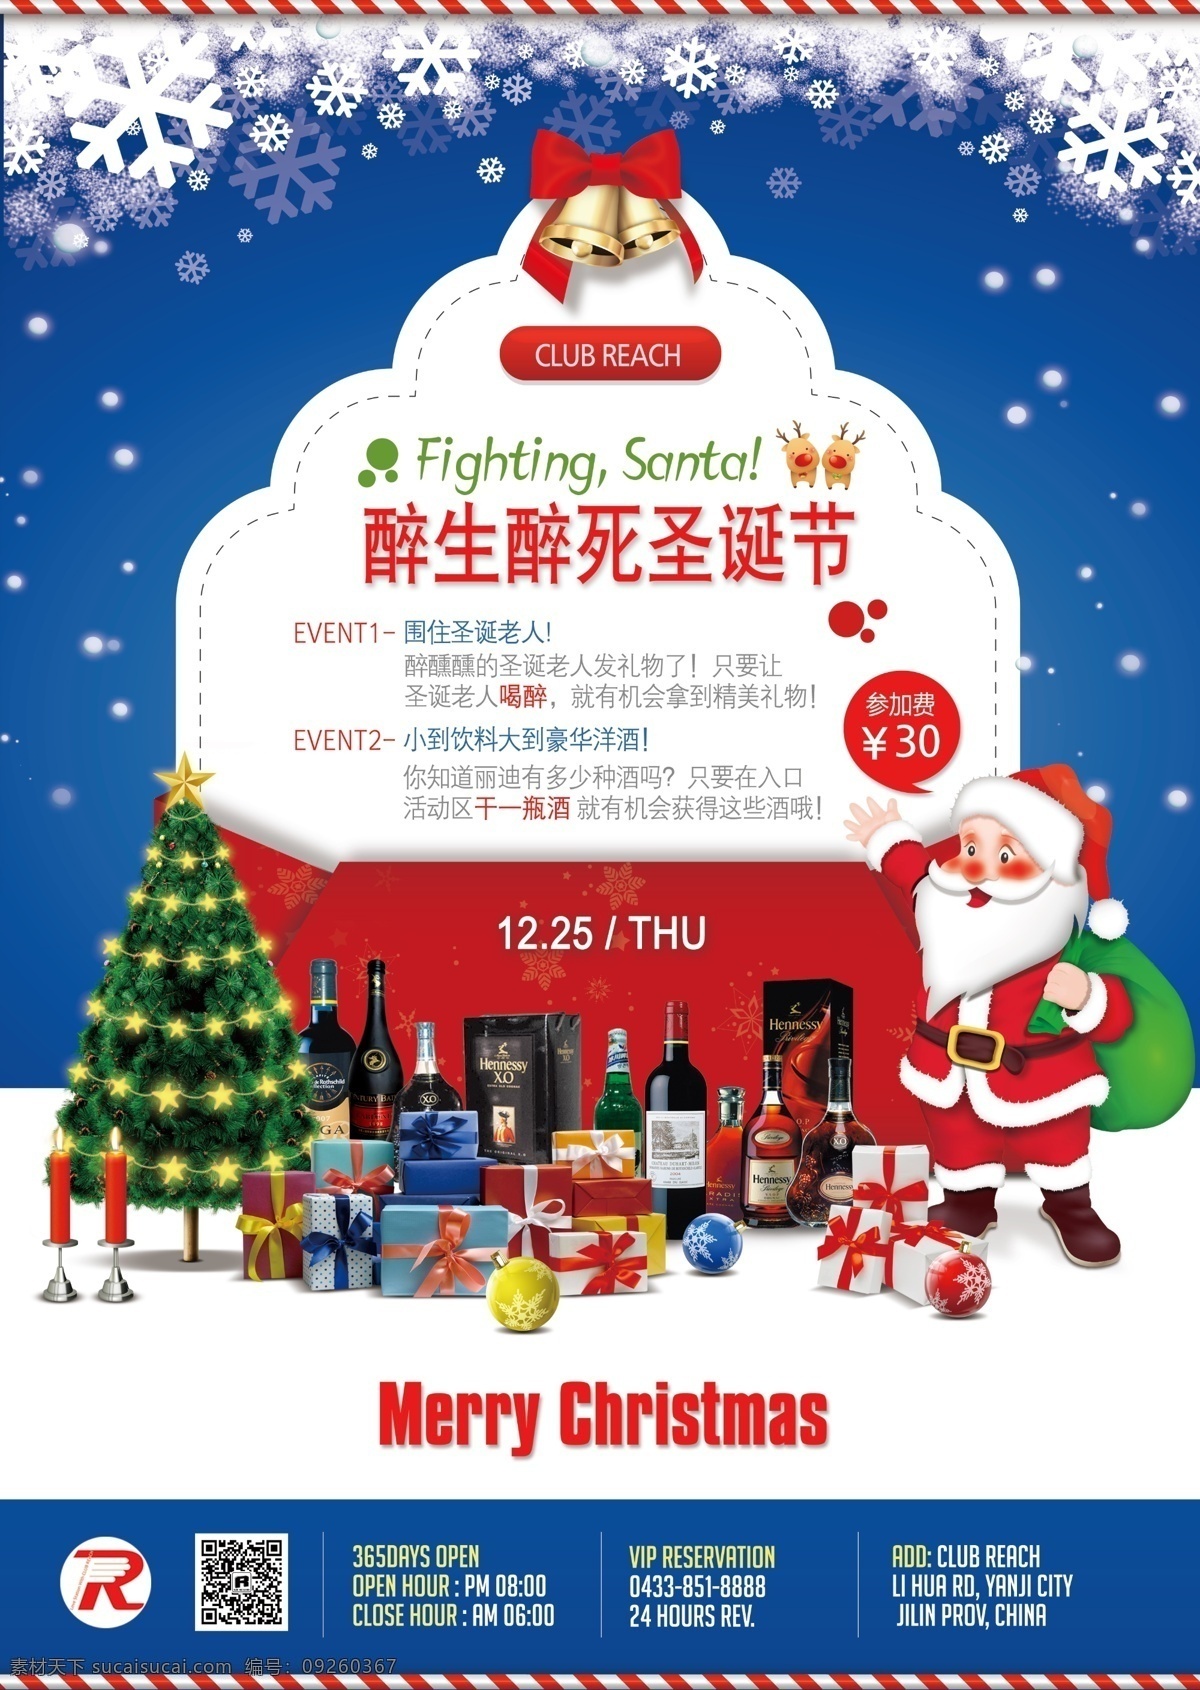 圣诞活动海报 精美圣诞海报 礼物矢量 葡萄酒 圣诞节 圣诞老人 圣诞礼物 圣诞树 洋酒 event 海报 活动告示 印刷海报